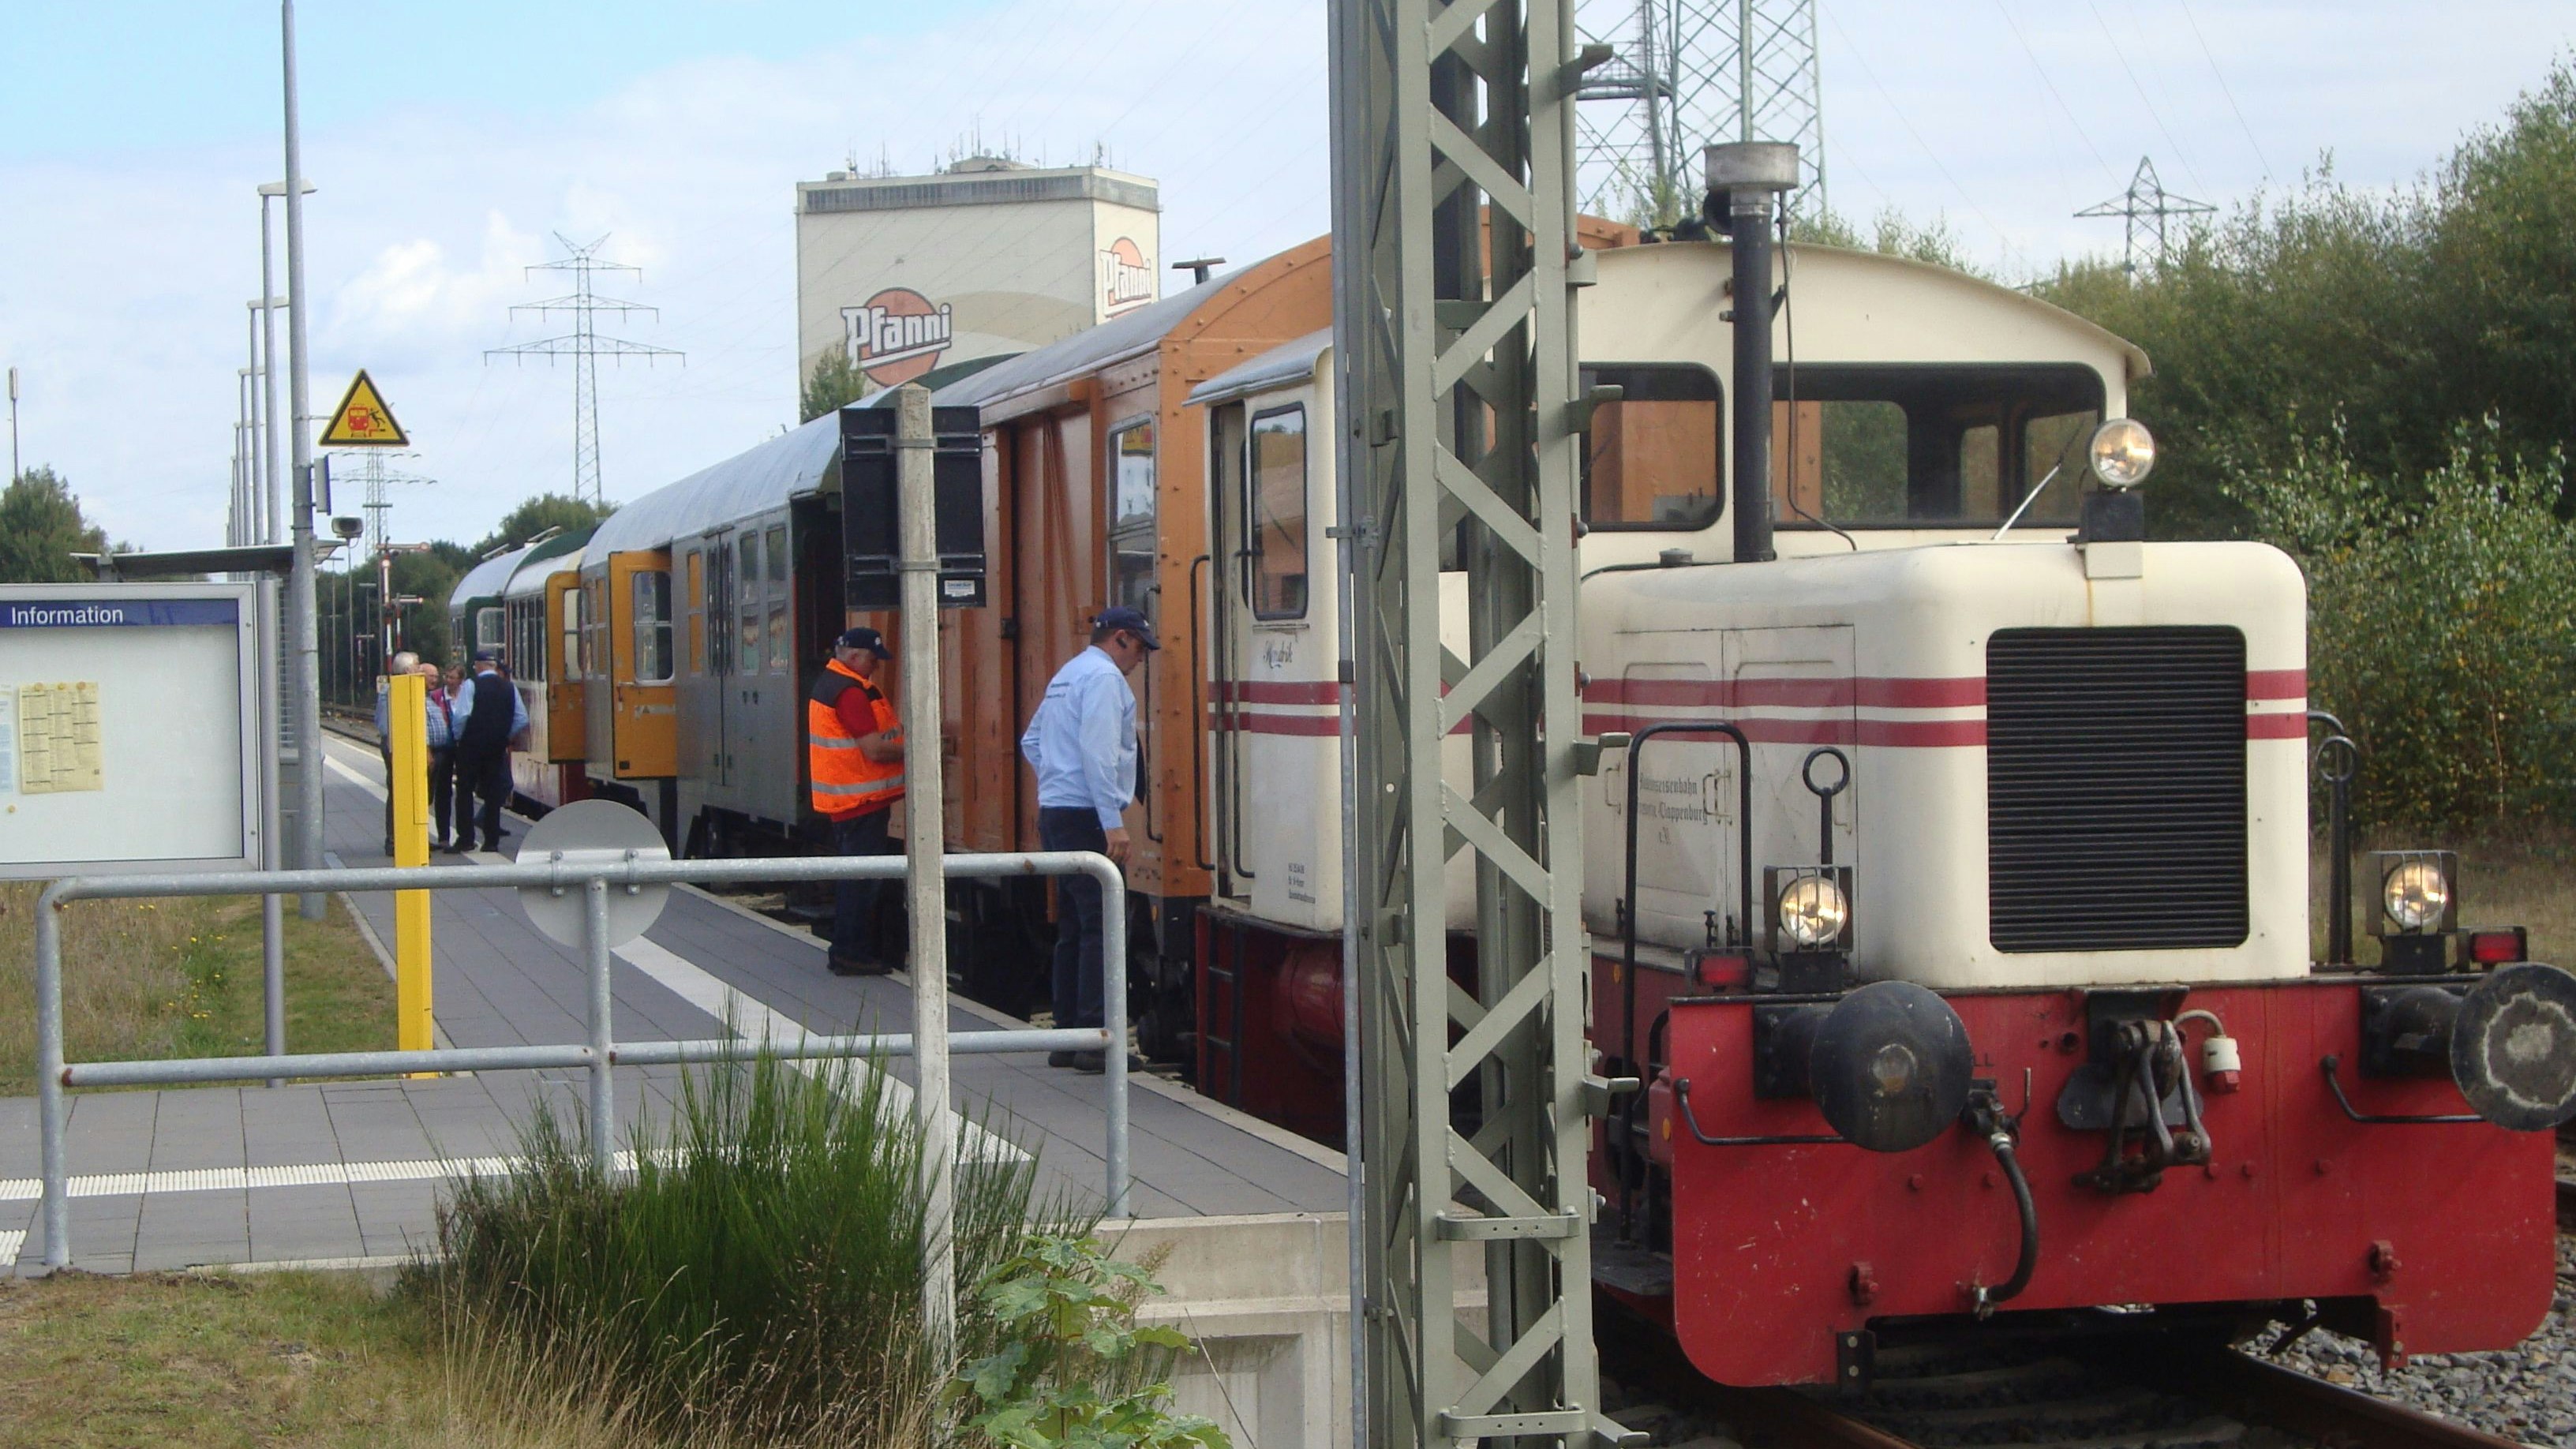 Nächster Halt Cloppenburg: Sollte die Museumseisenbahn demnächst wieder fahren, können die Fahrgäste auch am Cloppenburger Bahnhof wieder einsteigen. Foto: Museumseisenbahn